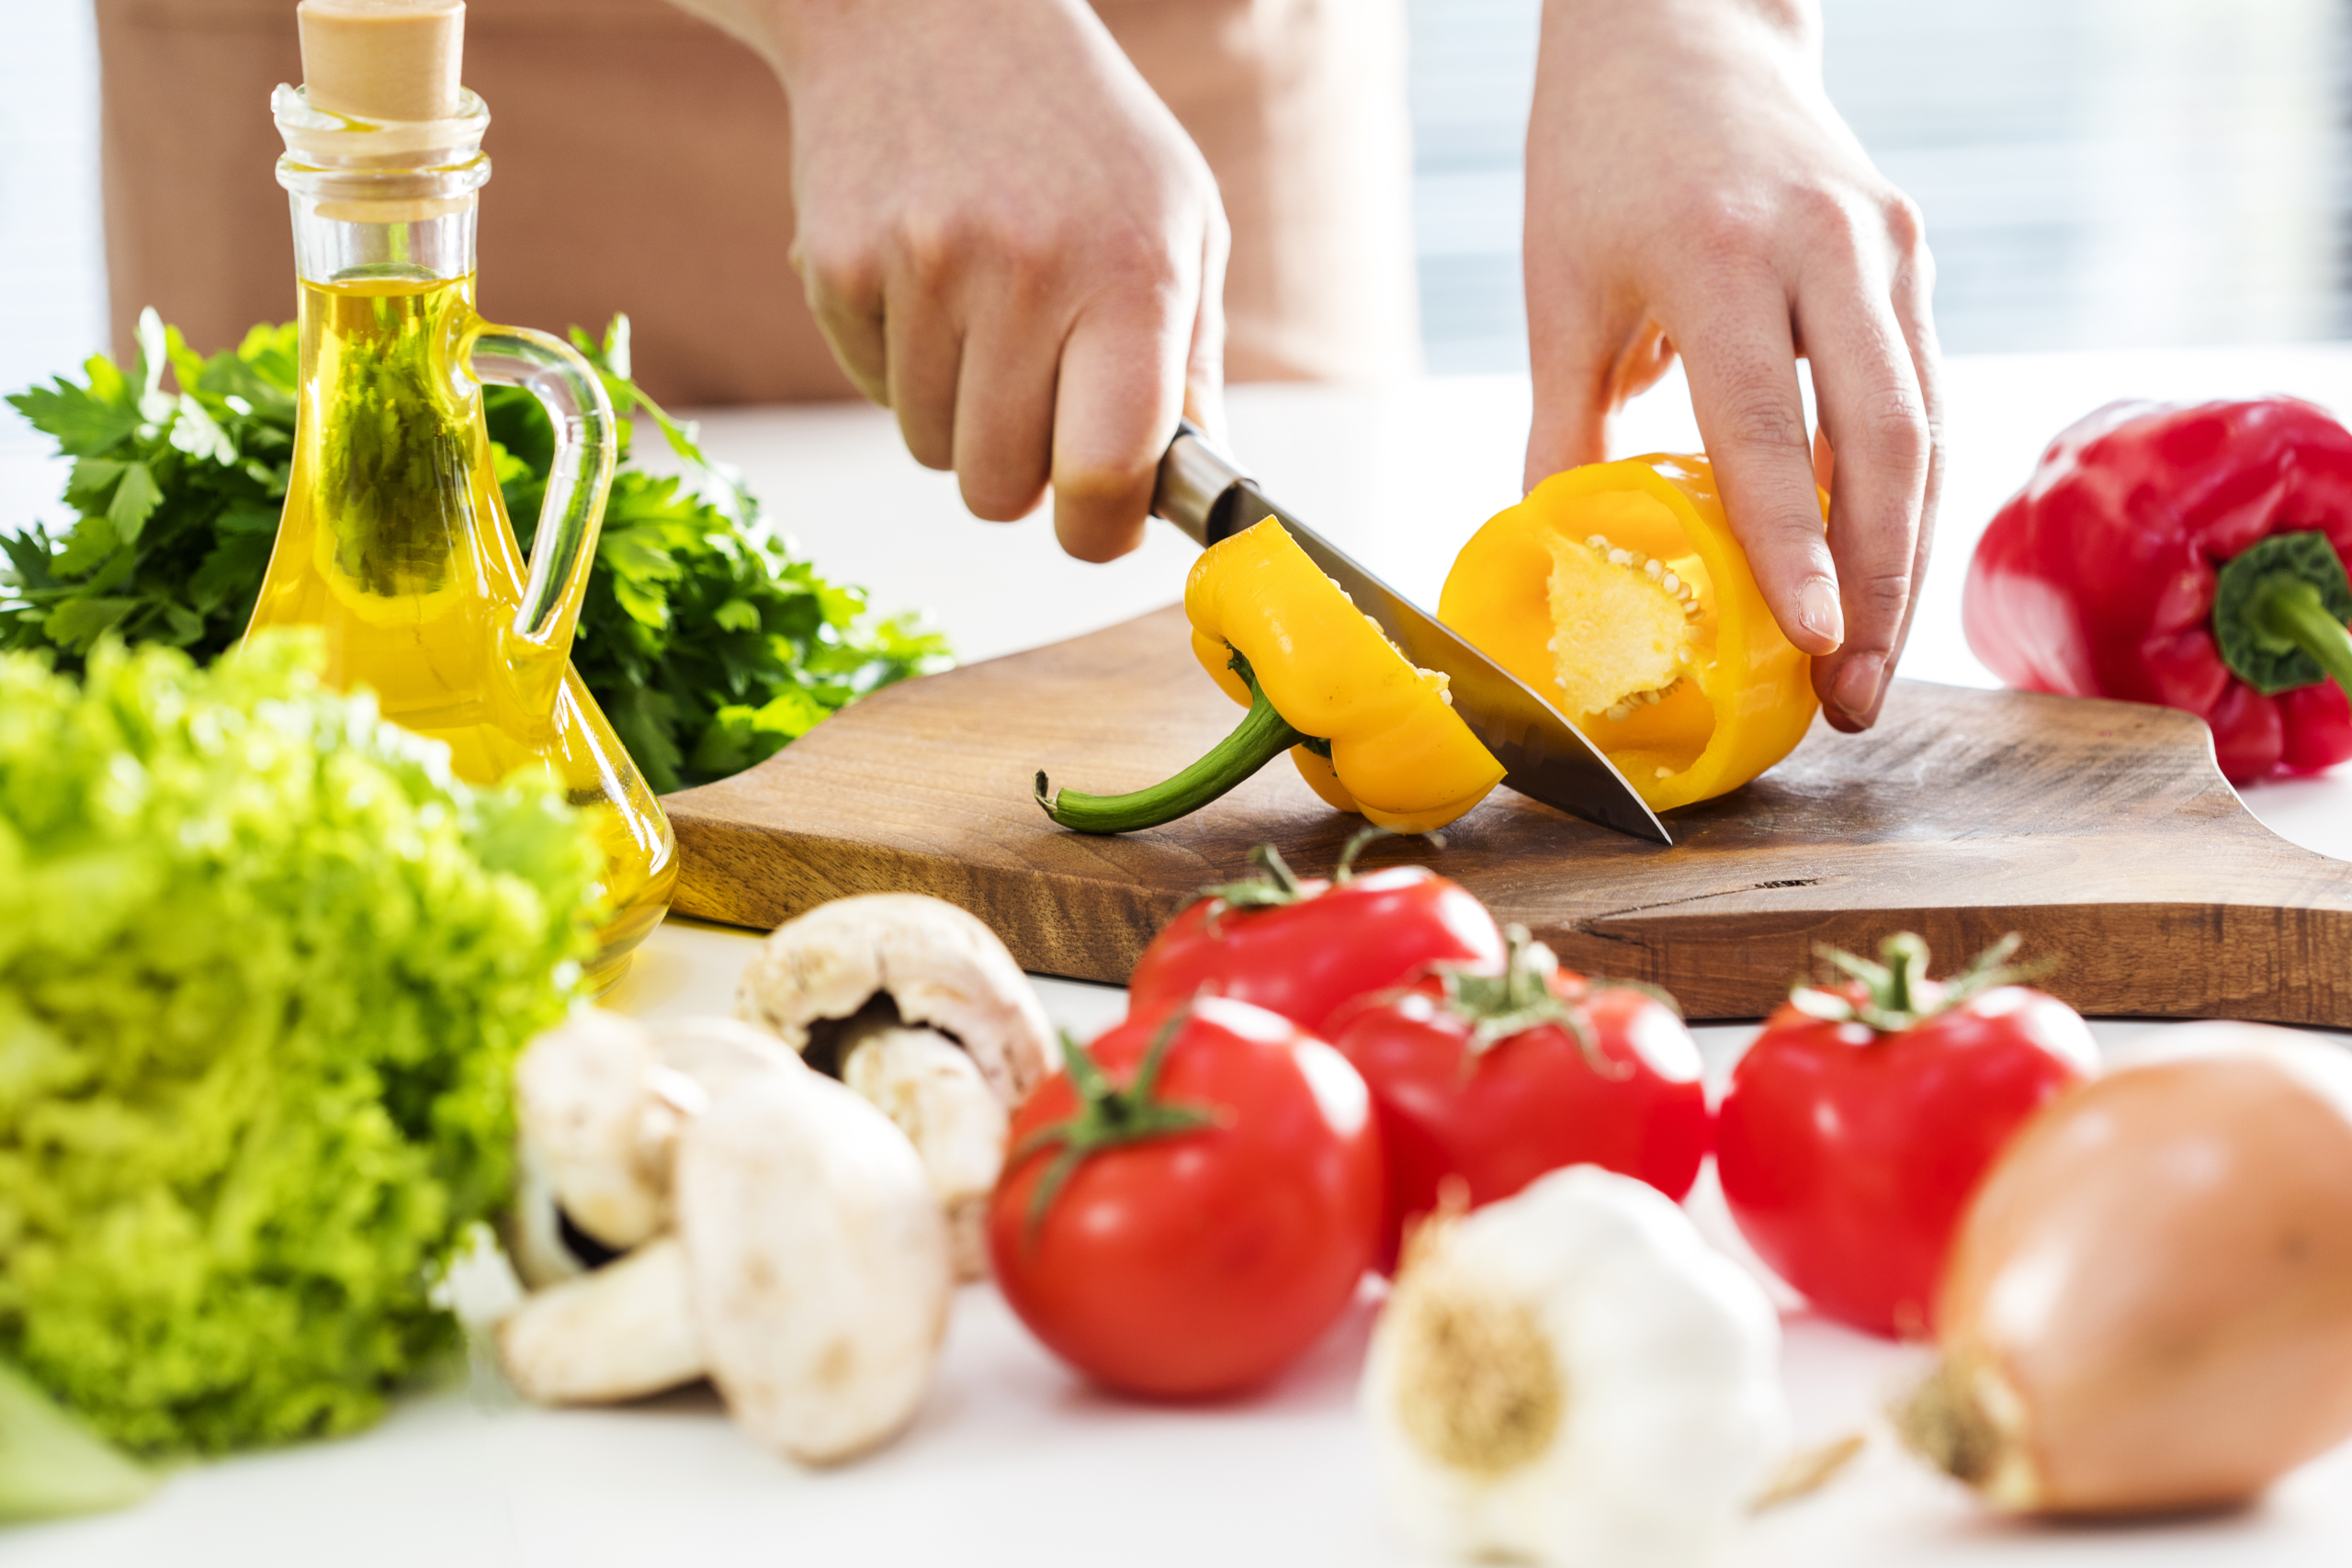 Trữ đông rau còn thừa để dùng sau là một cách tuyệt vời để giảm lãng phí. (Ảnh: Shutterstock)